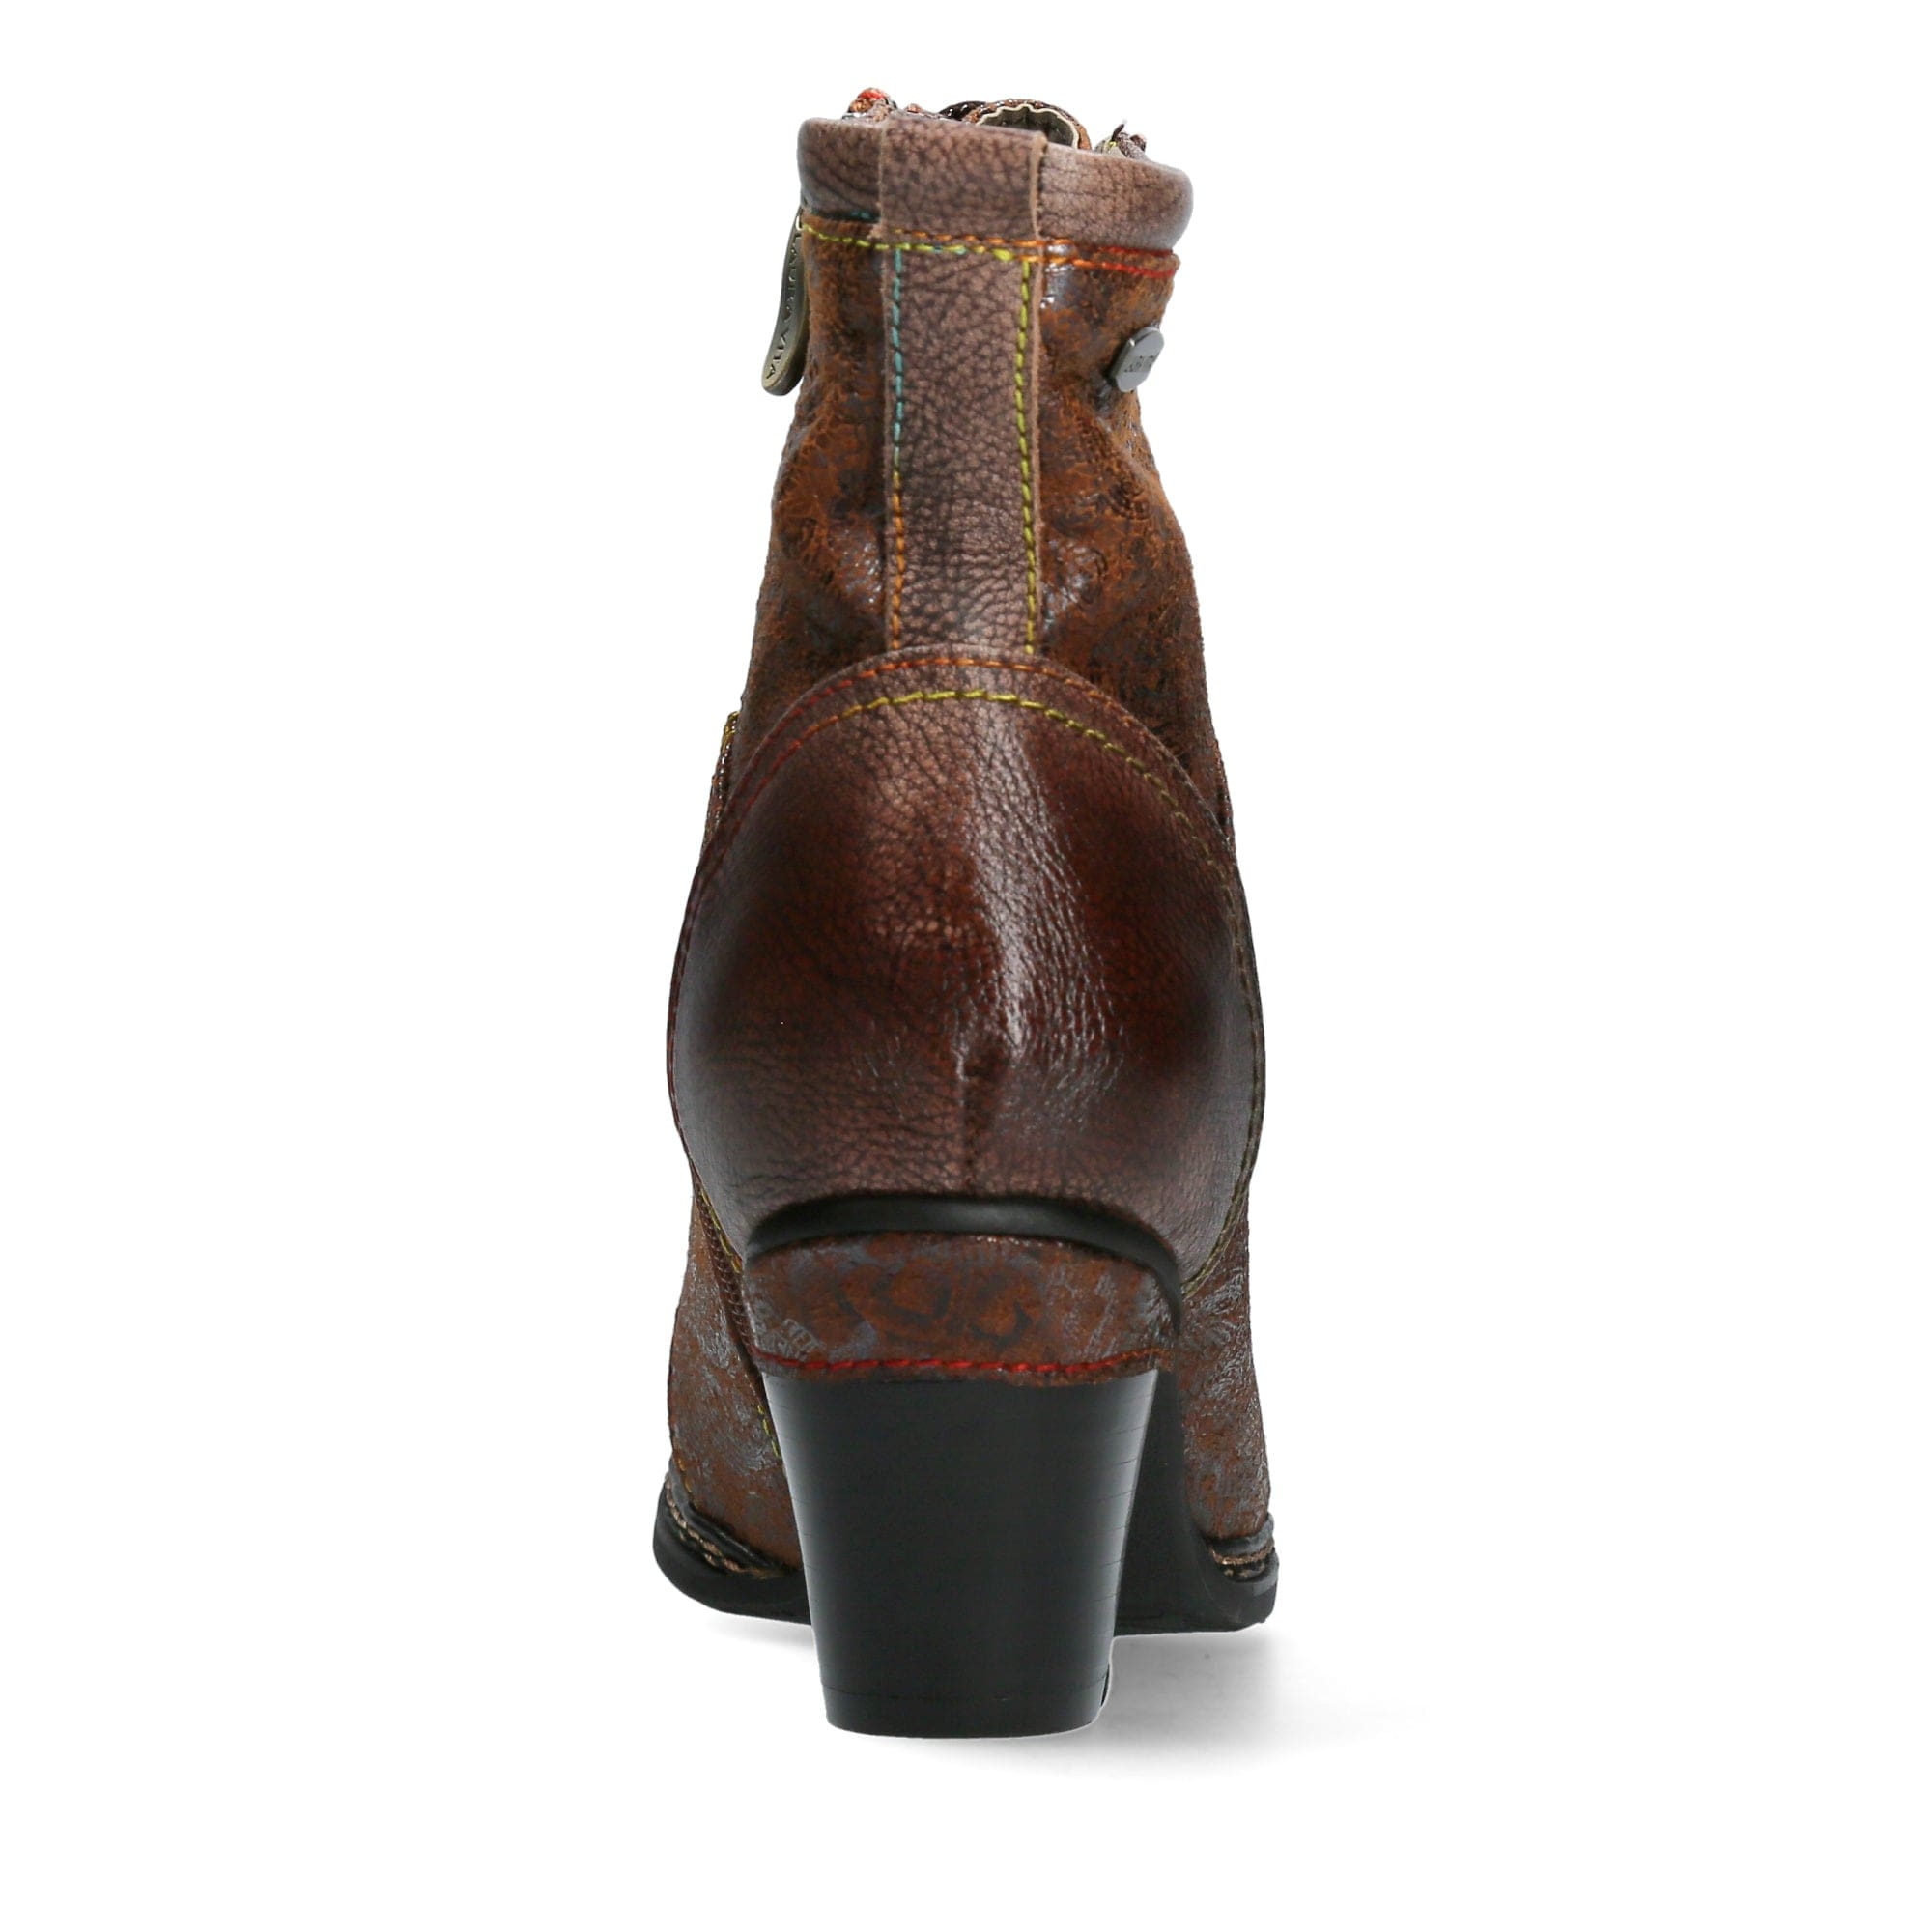 Shoe AGCATHEO 132 - Boots